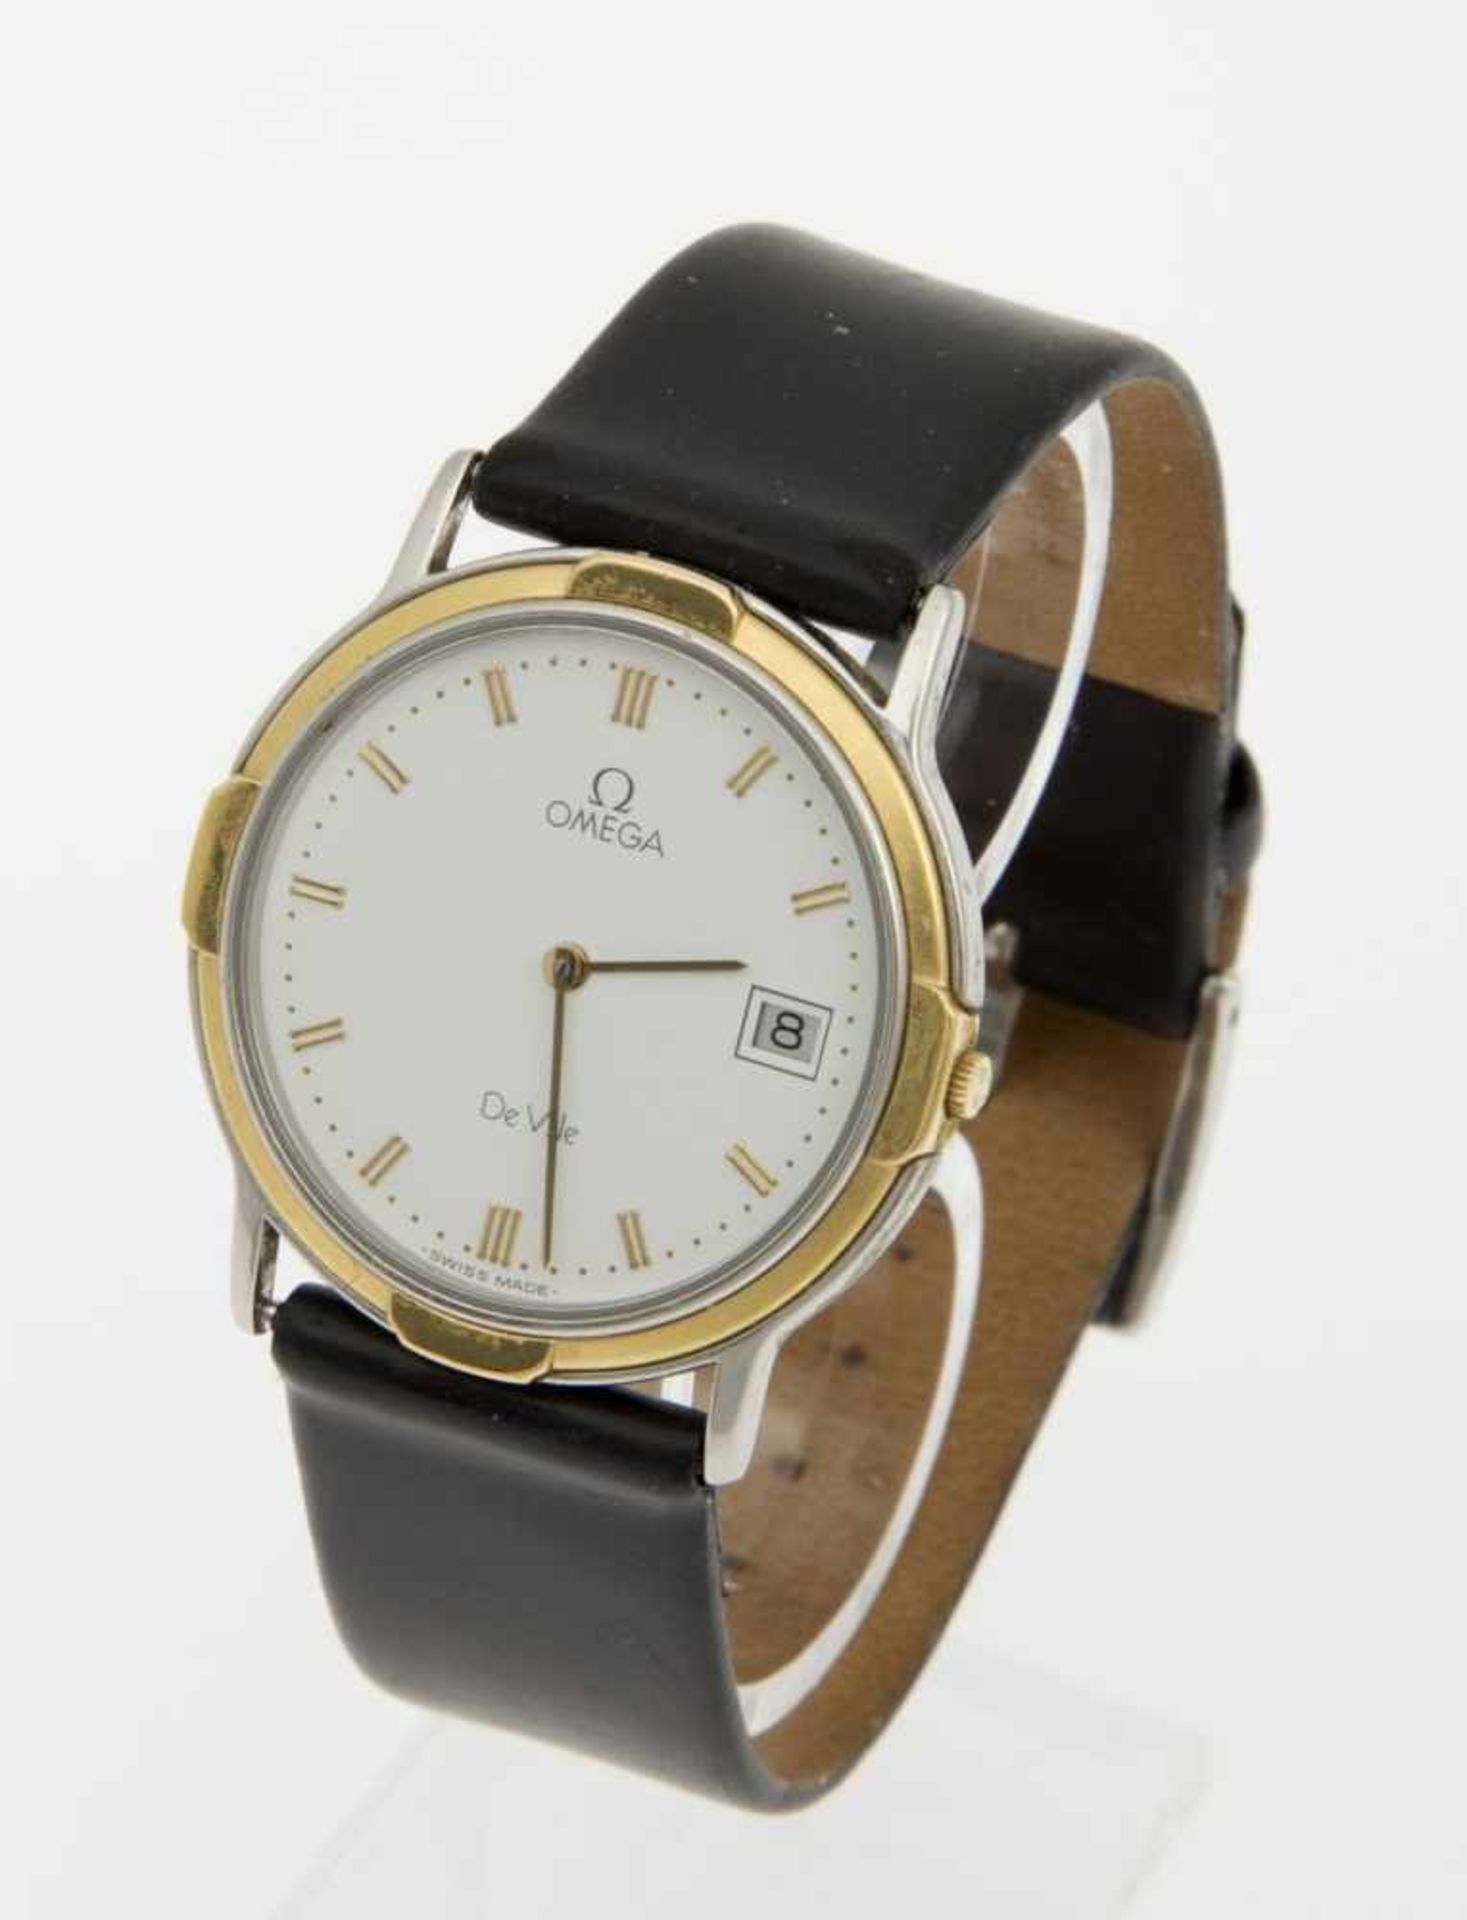 Omega-Armbanduhr De VilleFlaches Gehäuse aus Stahl, partiell vergoldet. Weißes Zifferblatt mit